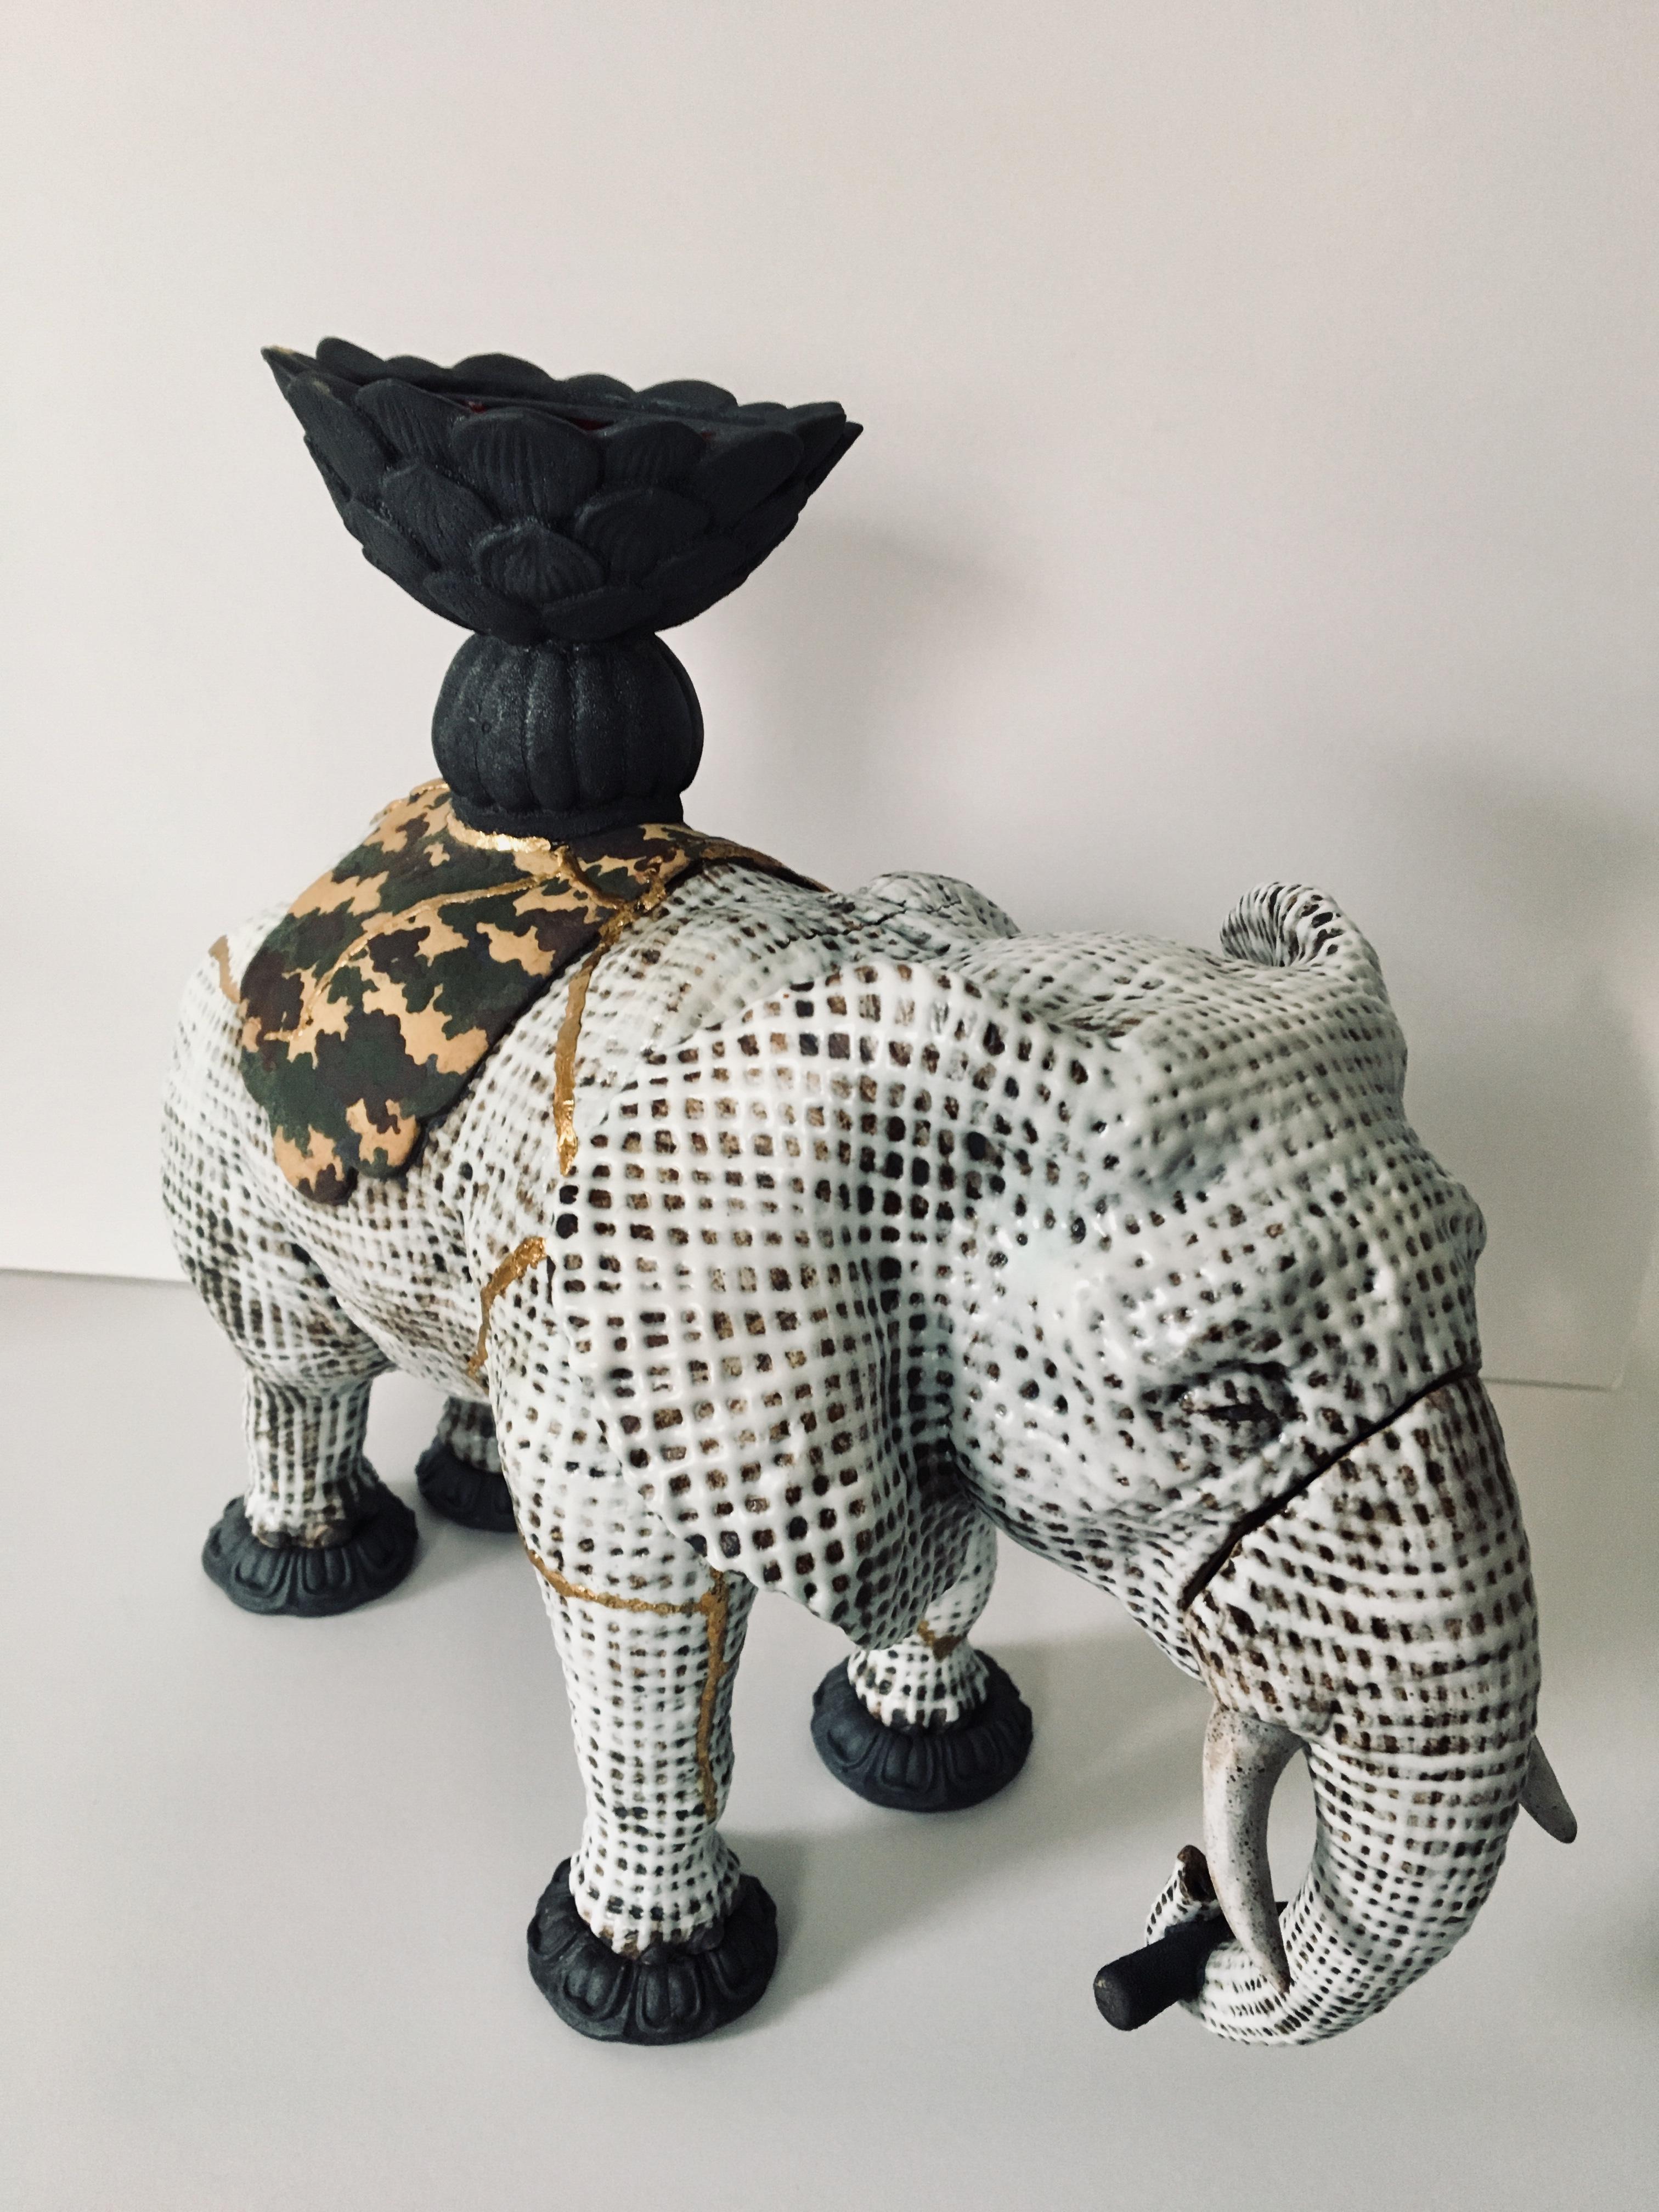 samantabhadra', Sanskrit für 'Universeller Würdiger'. Dieses neue Werk von Kenjiro Kitade unterstreicht sein Bewusstsein für die Notlage der Elefanten und ihre Gefährdung. Obenauf sitzt ein verbrannter Buddha, dem man seine Not anmerkt. Kitade